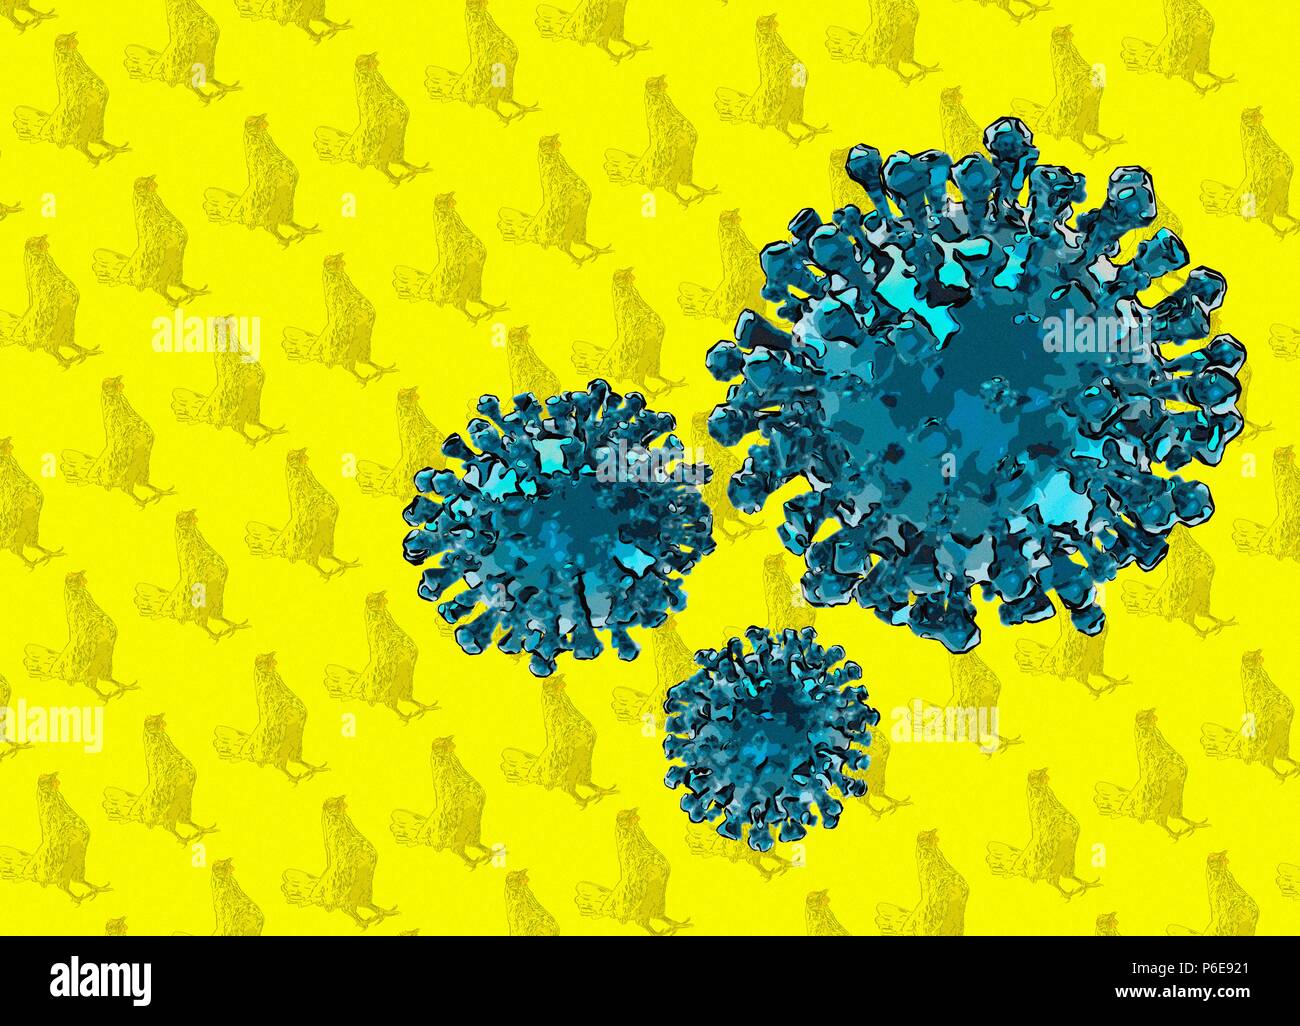 Vogelgrippe, konzeptionelle Darstellung. Stockfoto